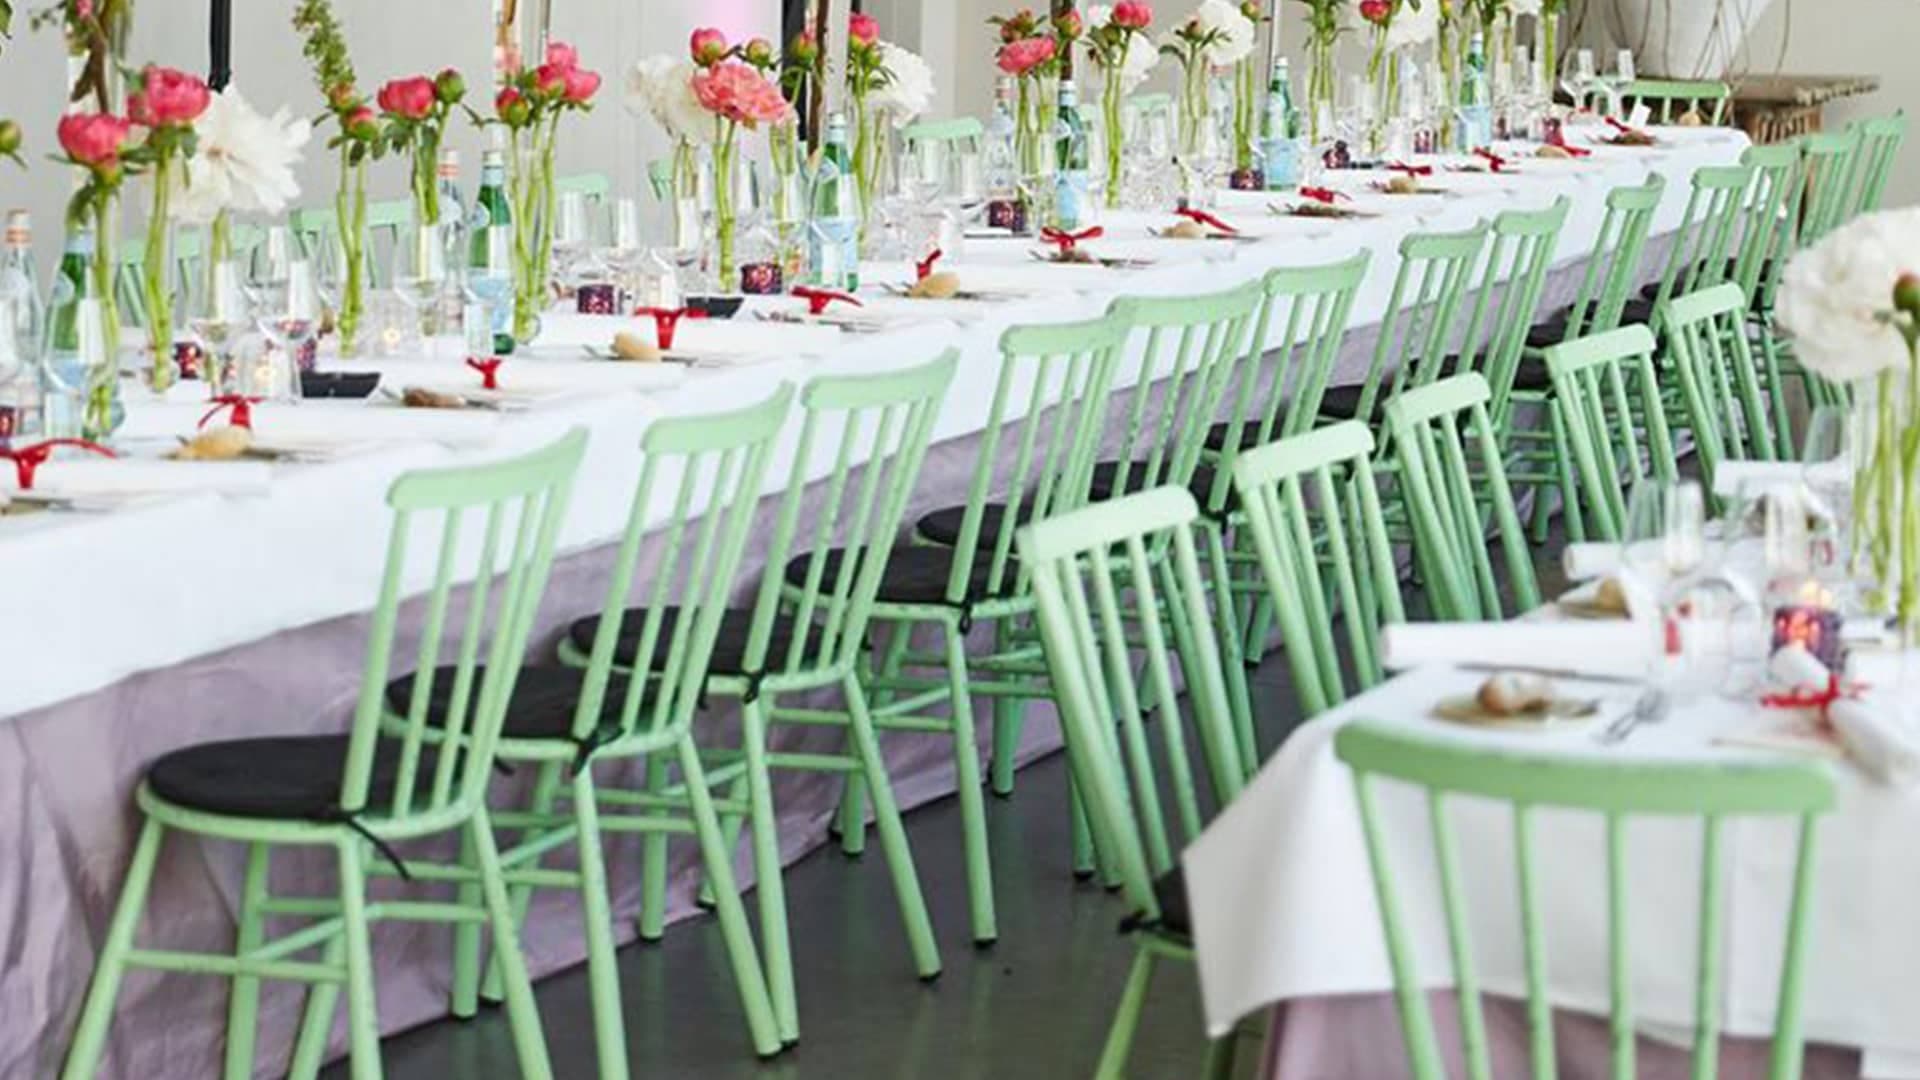 727-H45-ALU Silla para eventos de alquiler Tiffany Chiavari para banquetes de bodas en interiores y exteriores